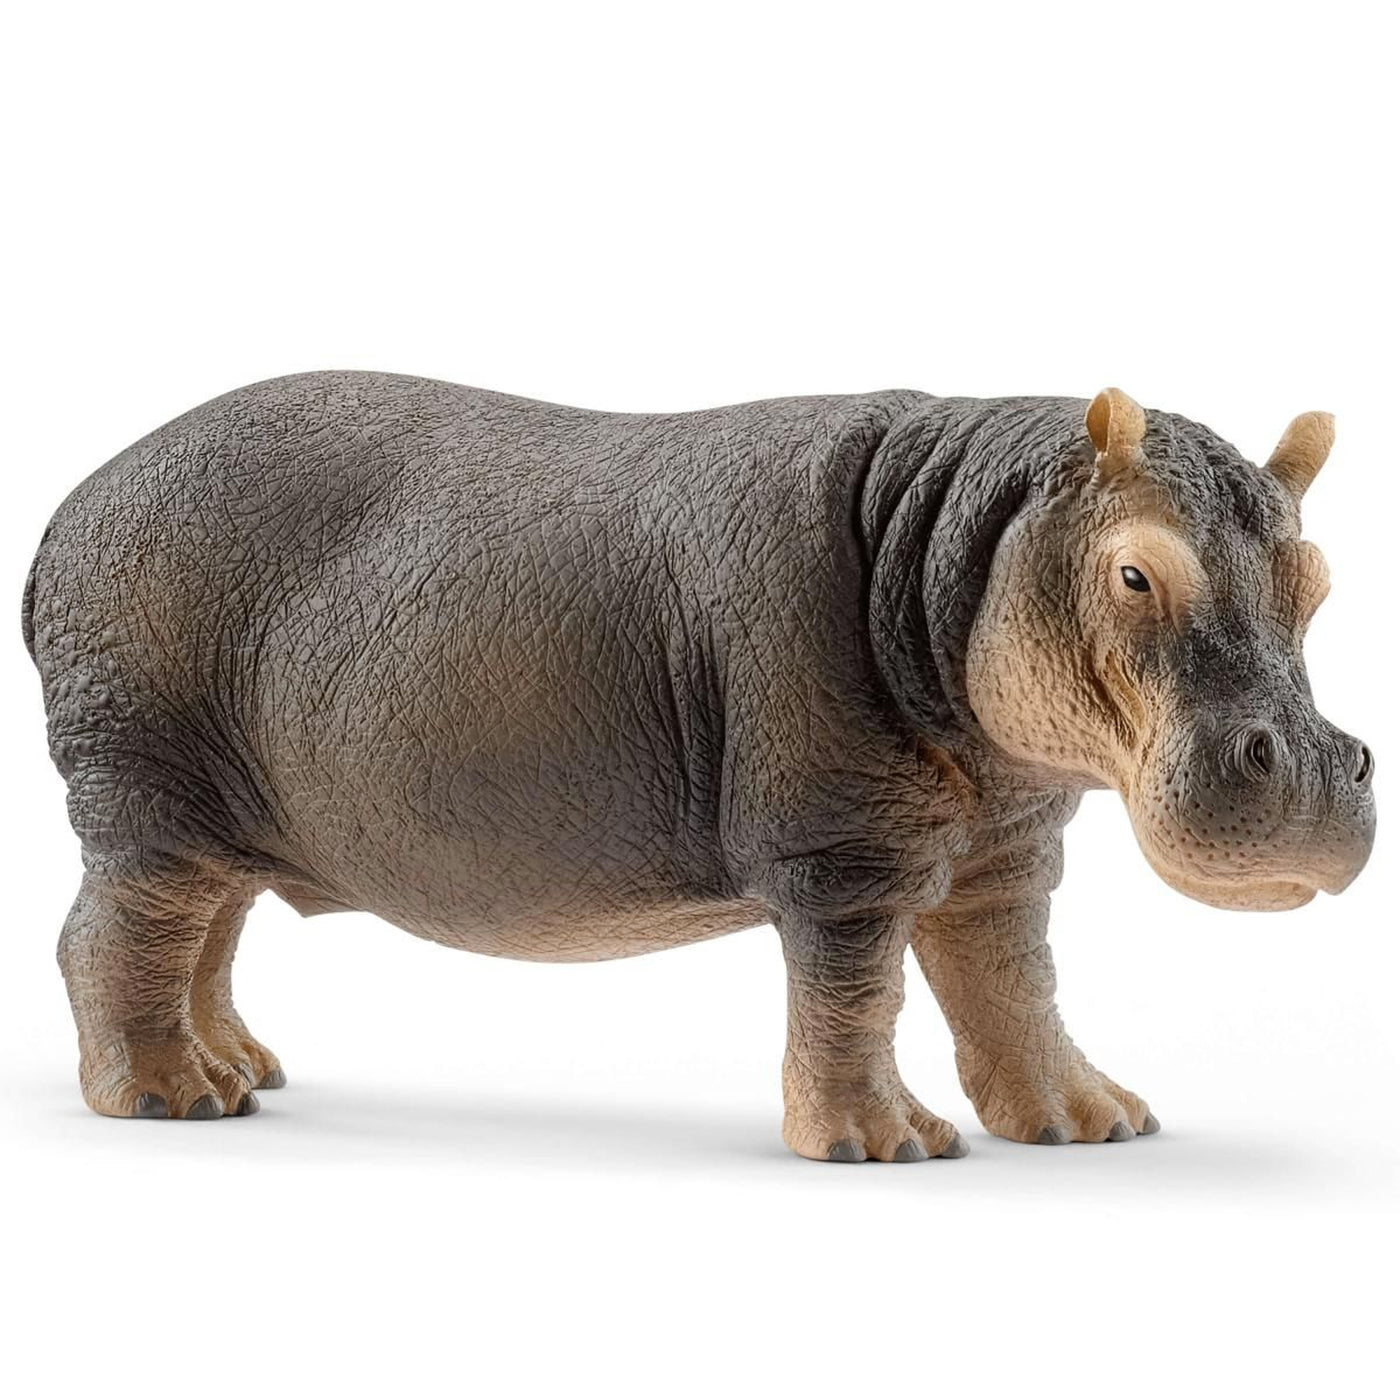 Schleich Wild Life Hippopotamus Toy Figurine